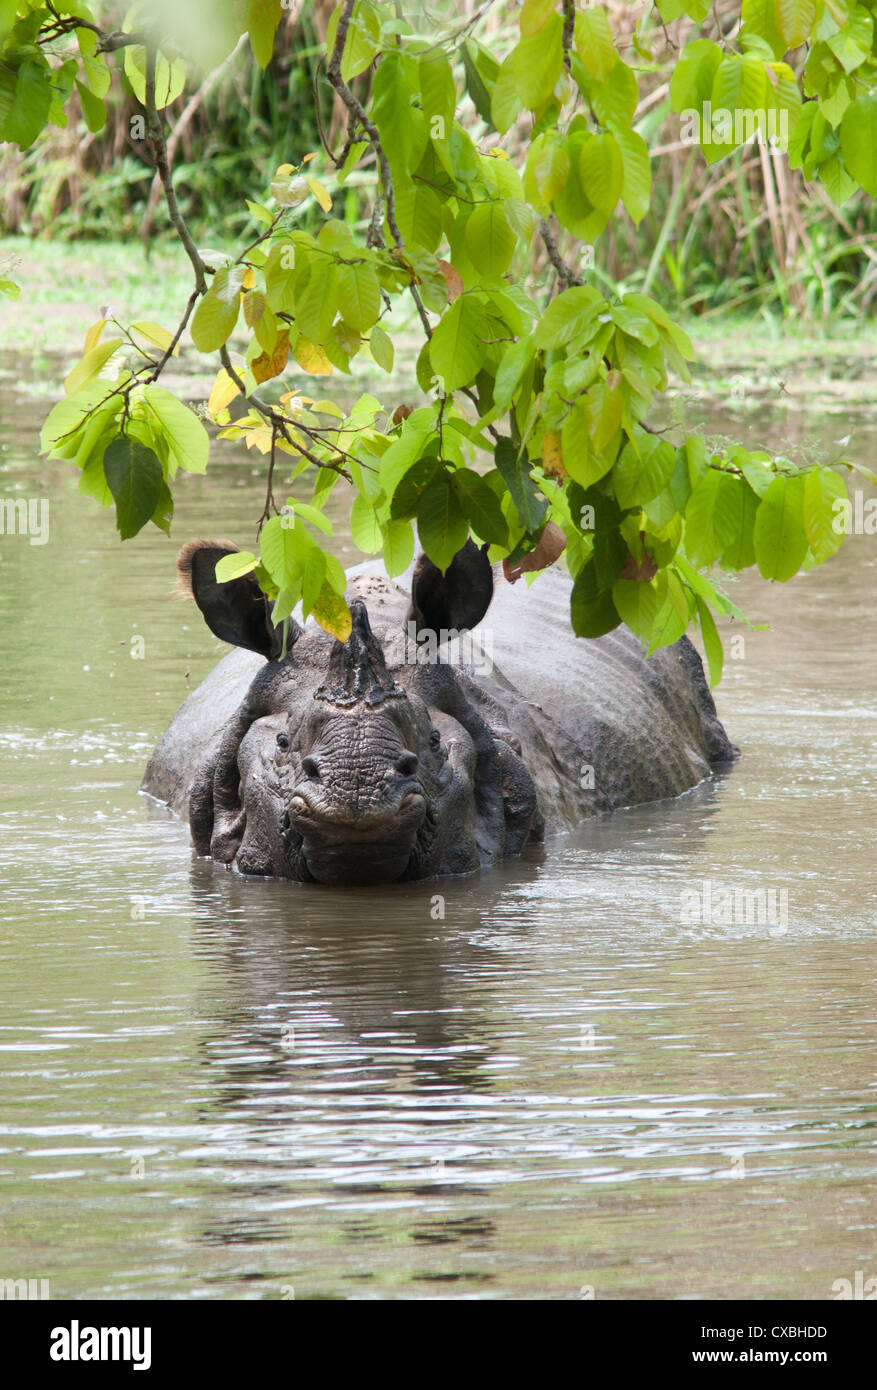 Indian rhinocéros à une corne, Rhinoceros unicornis, dans une rivière, parc national de Chitwan, au Népal Banque D'Images